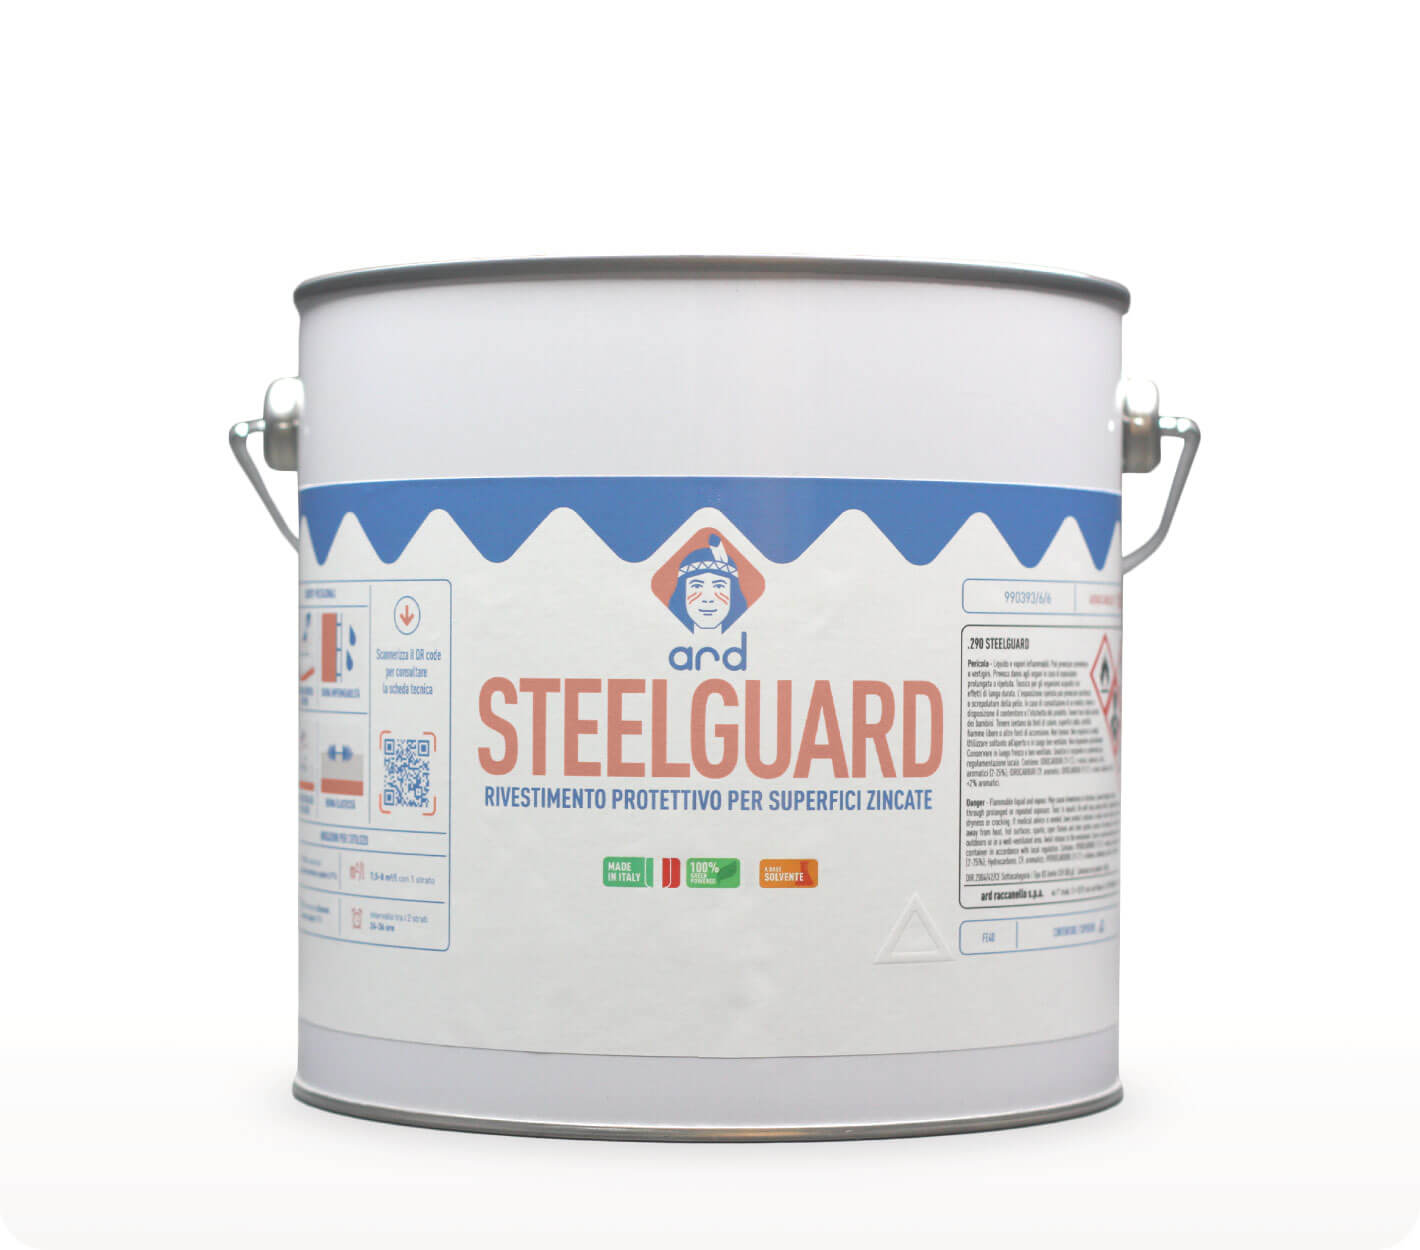 Steelguard - rivestimento protettivo per superfici zincate - Ard Raccanello